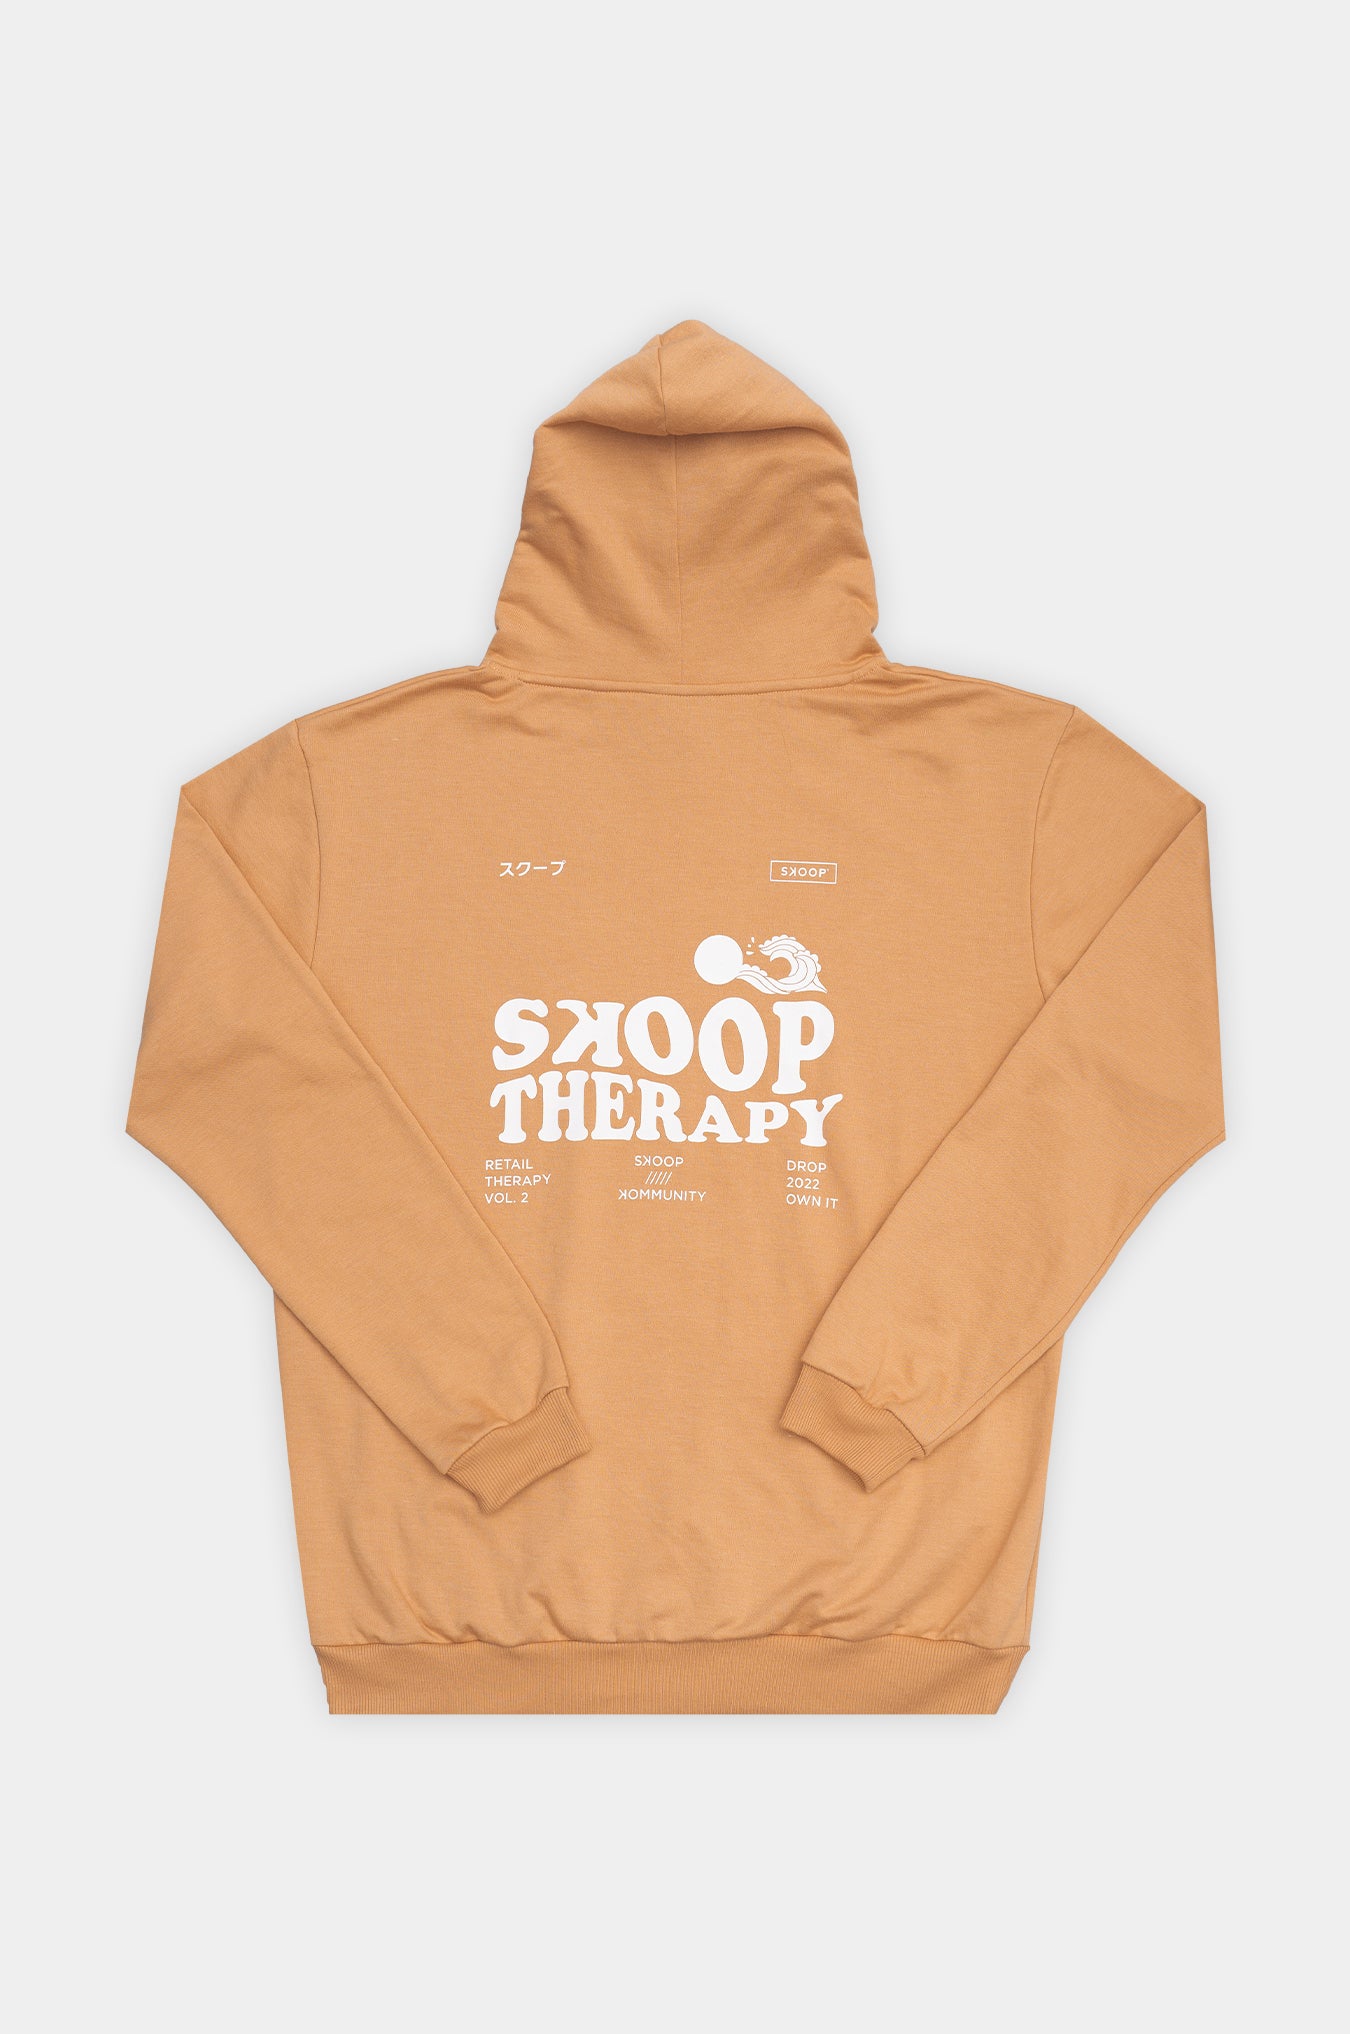 SKOOP®Therapy Hoodie - SKOOP Kommunity